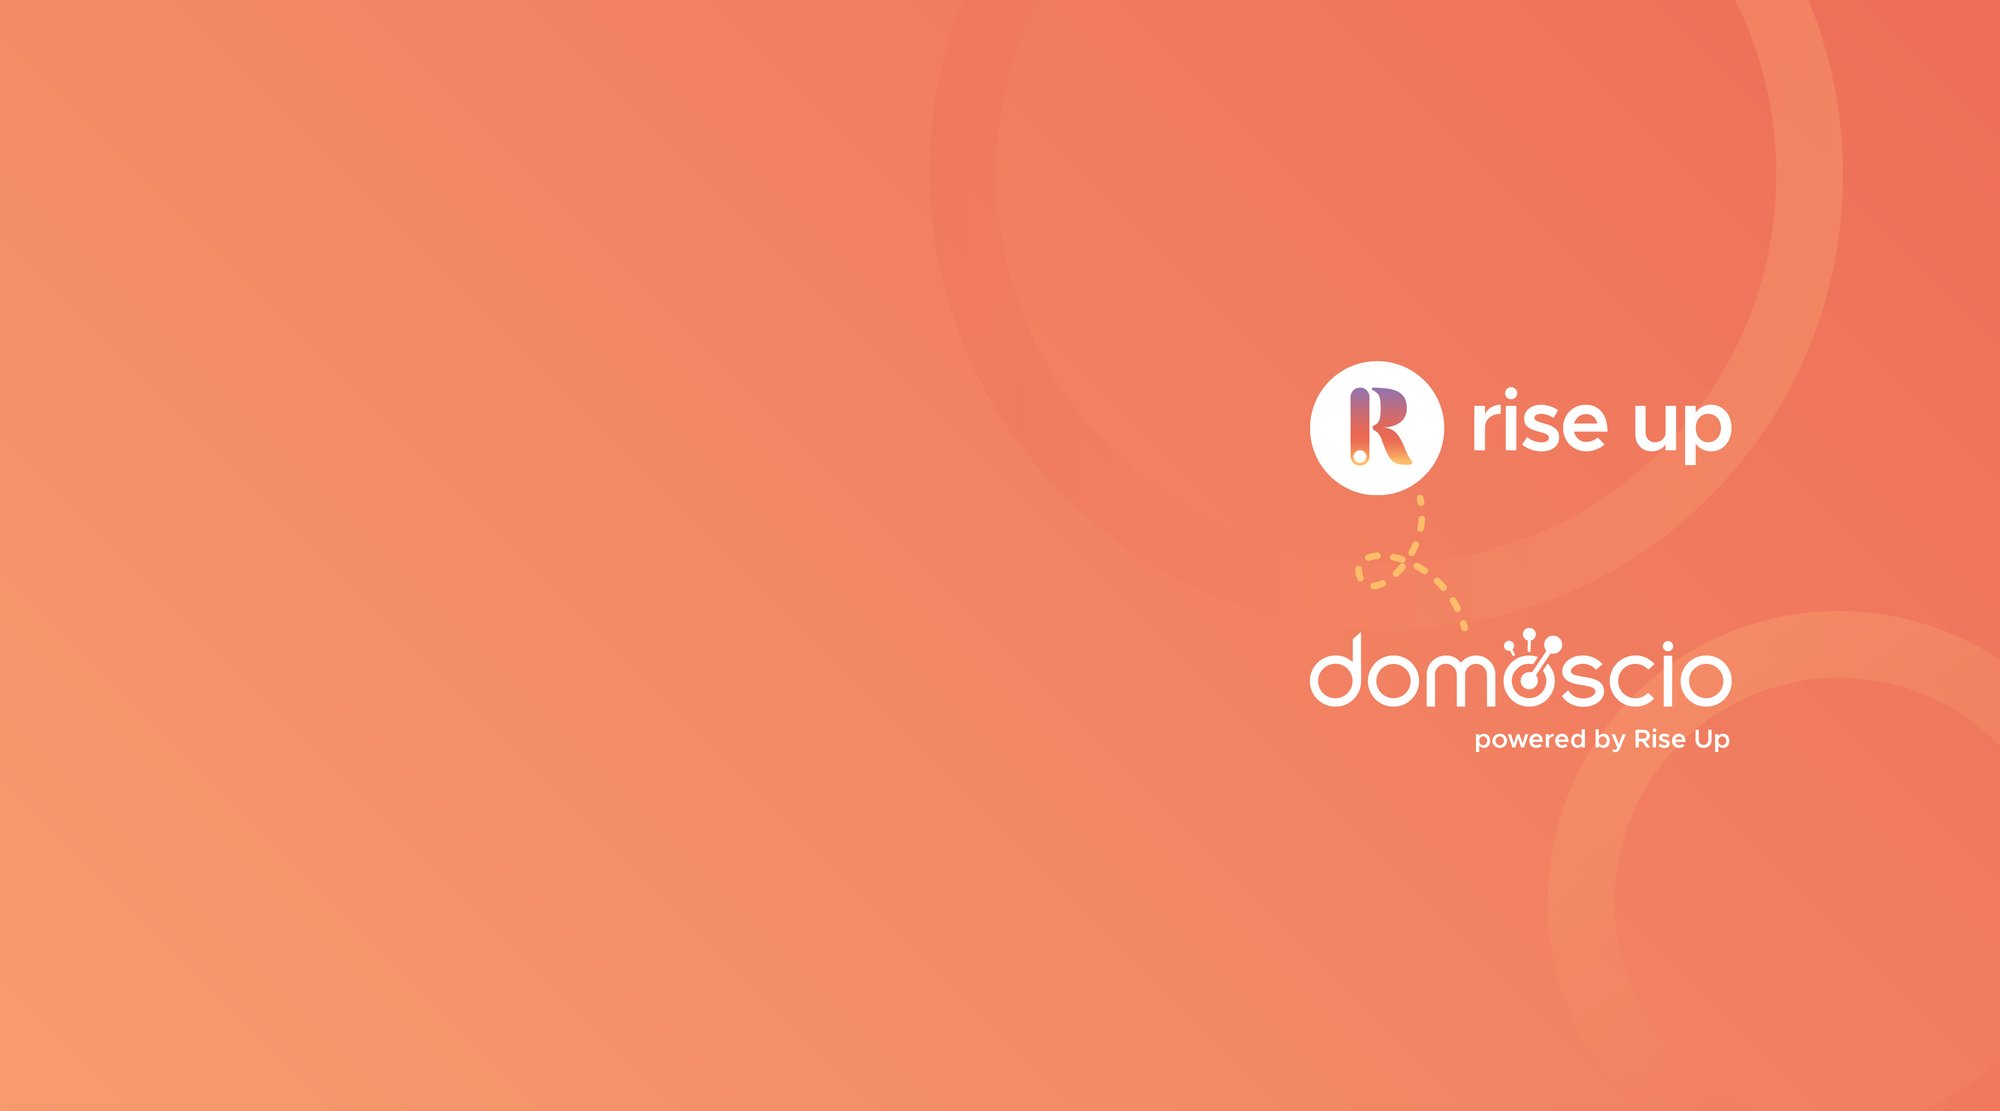 Rise Up Acquires Domoscio